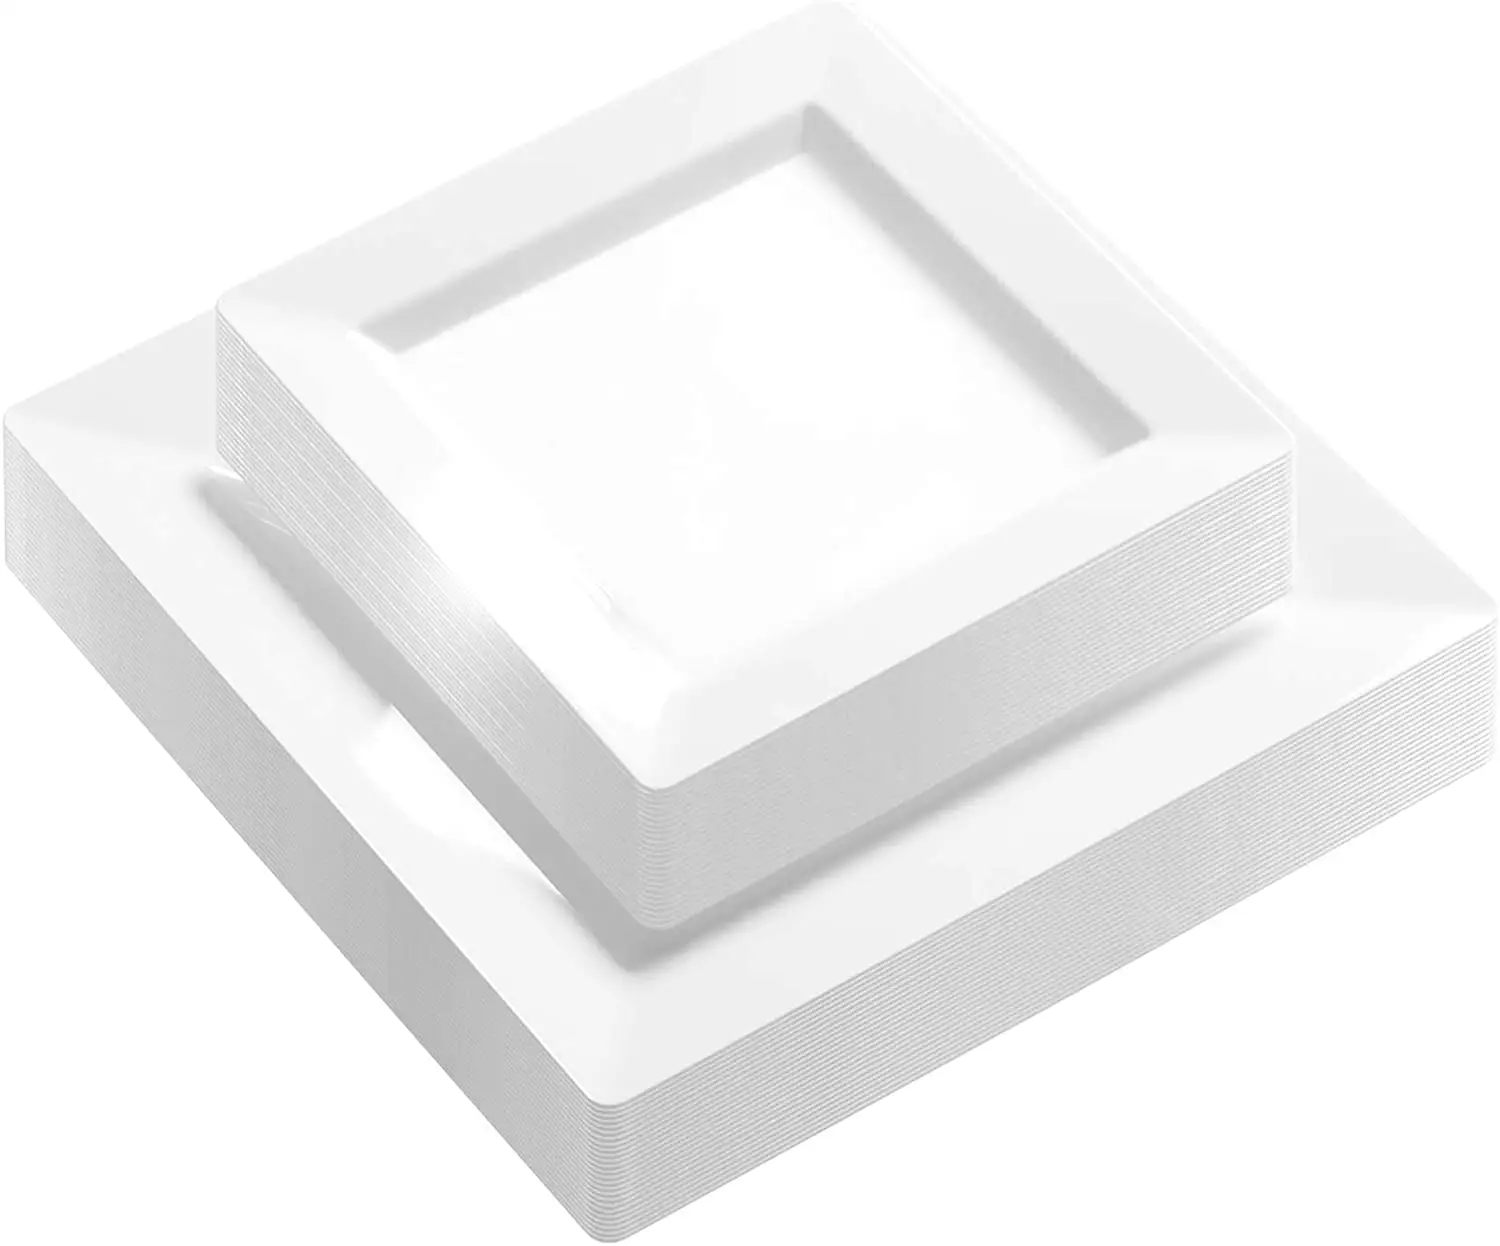 सफेद सलाद मिठाई वर्ग प्लेटों के साथ सफेद सलाद प्लेट प्लेट व्यंजन प्लास्टिक डिस्पोजेबल डिनर चार्जर प्लेटें